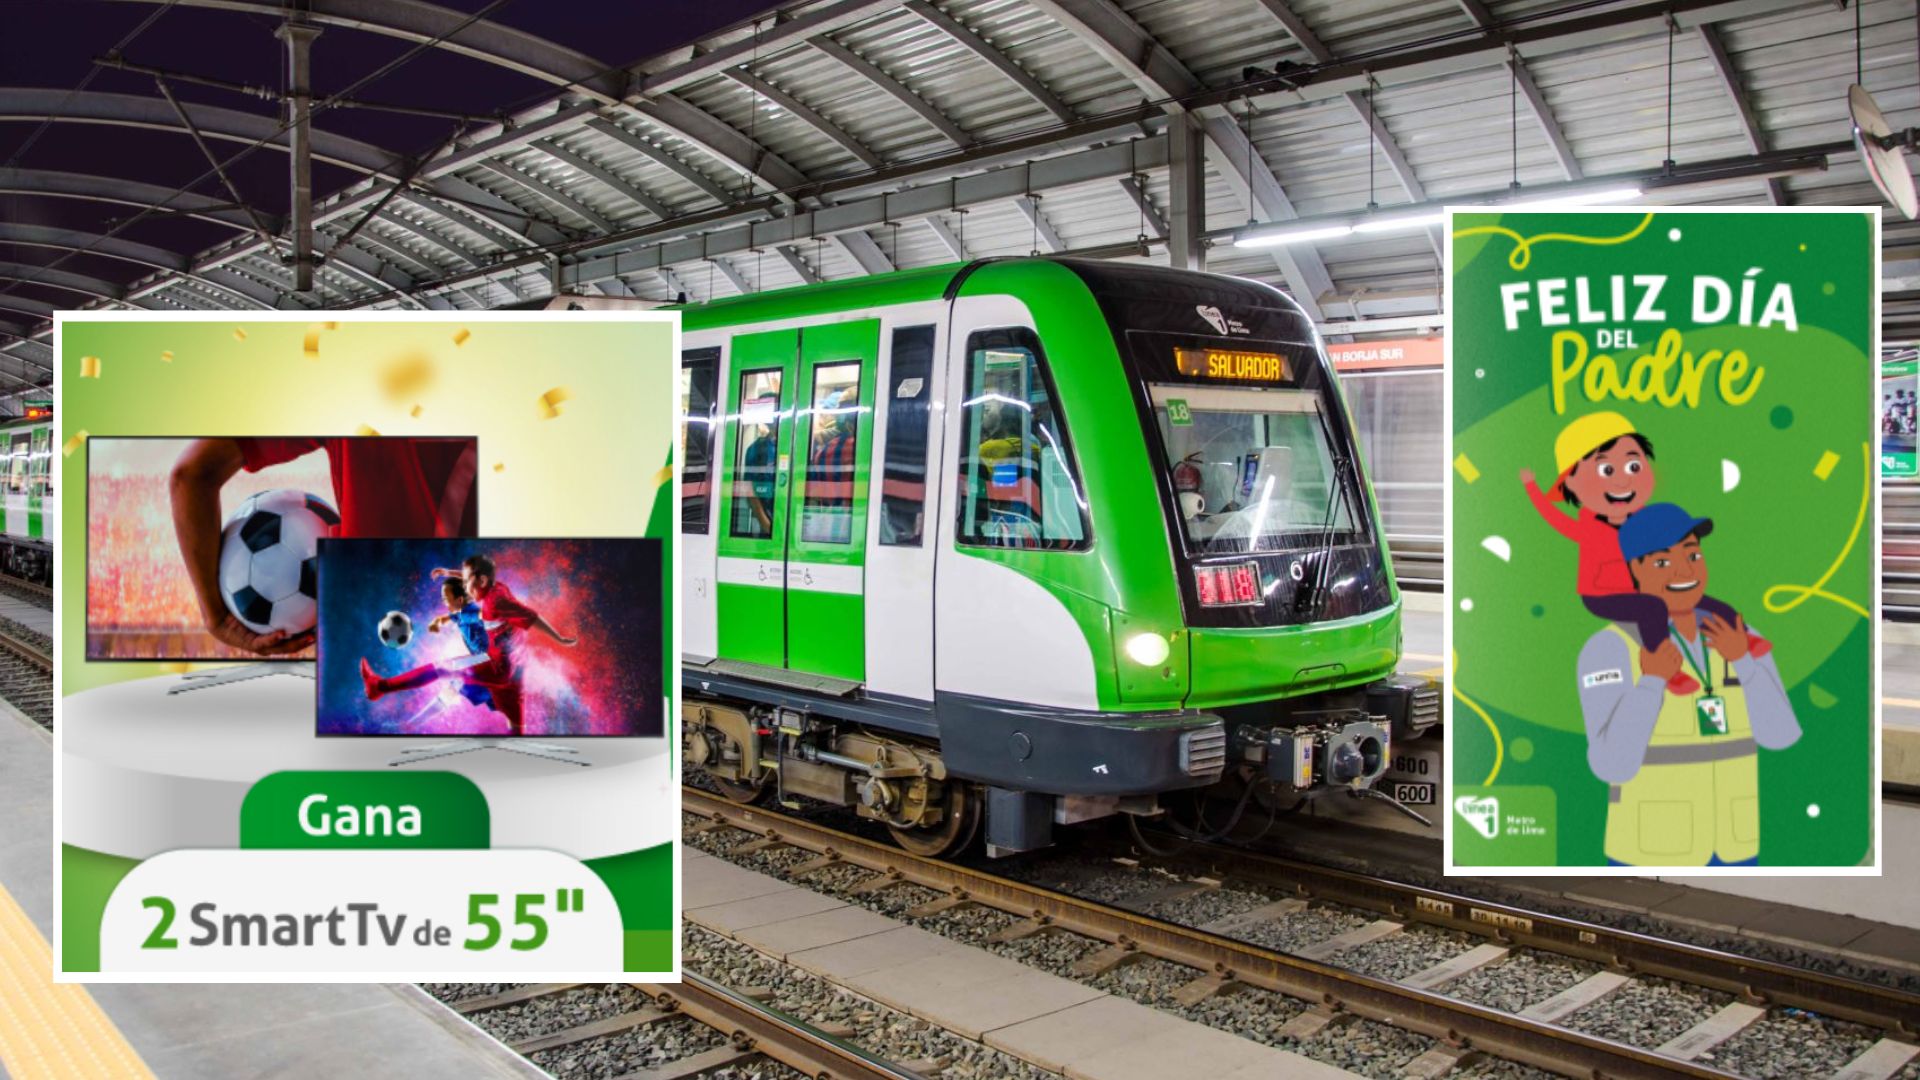 Línea 1 del Metro de Lima sorteará televisores y 40 tarjetas con 100 soles por el Día del Padre